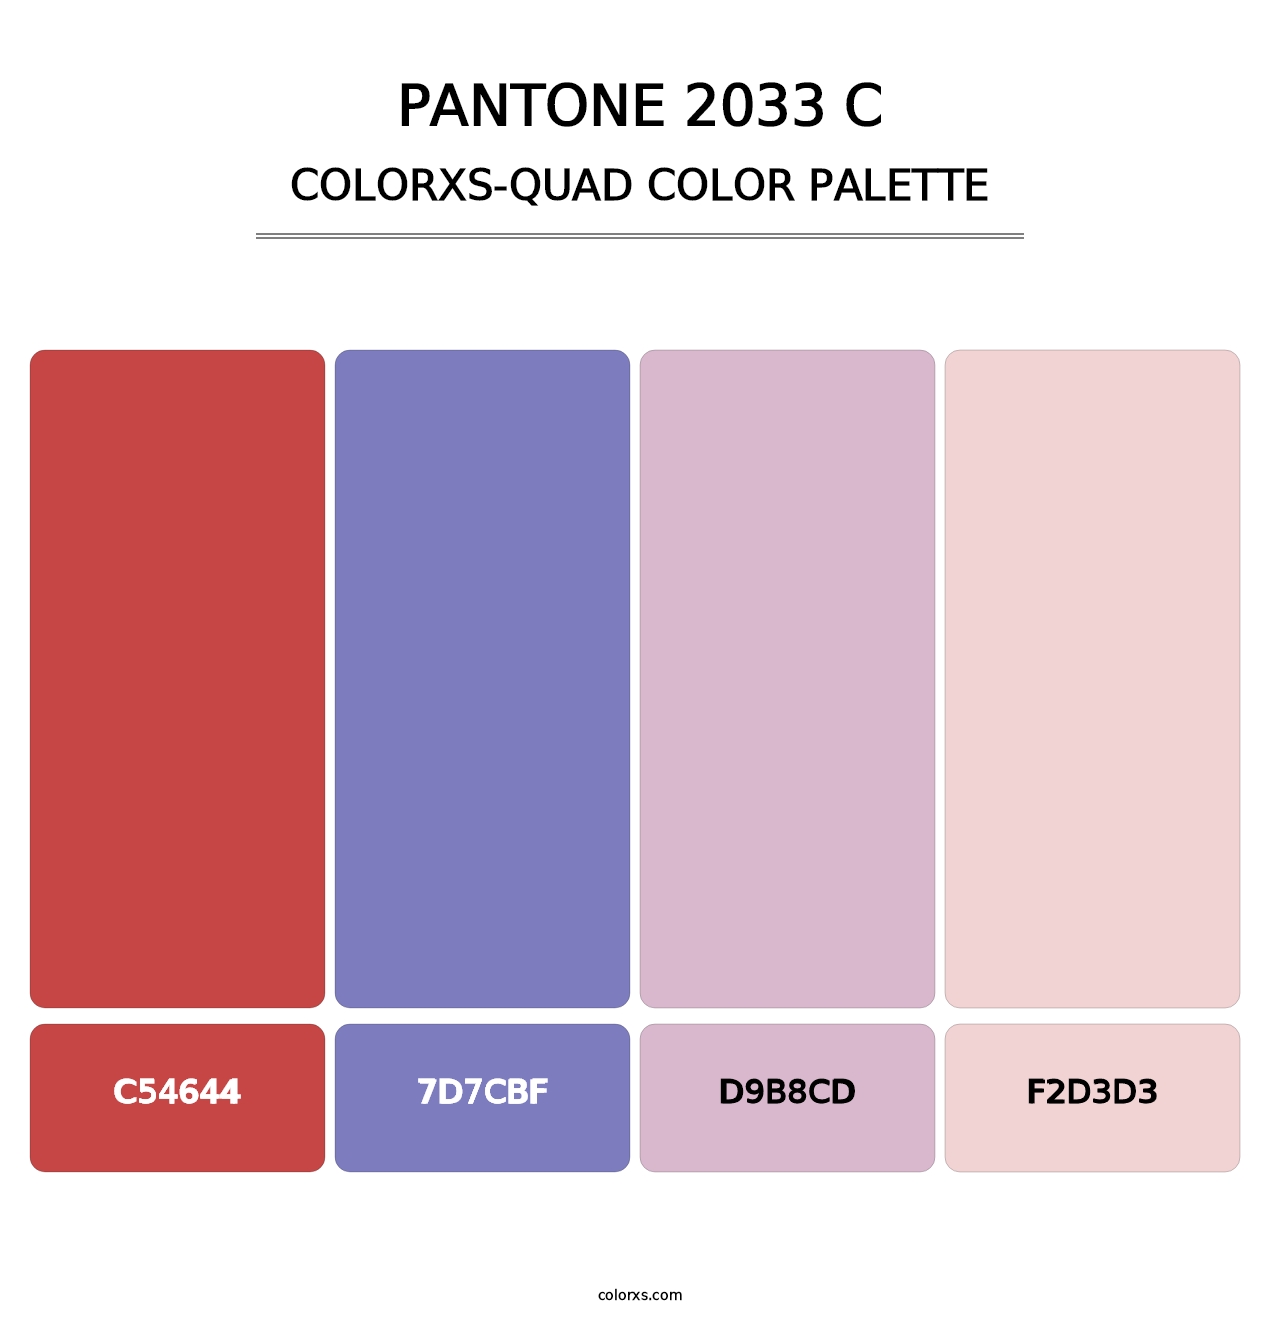 PANTONE 2033 C - Colorxs Quad Palette